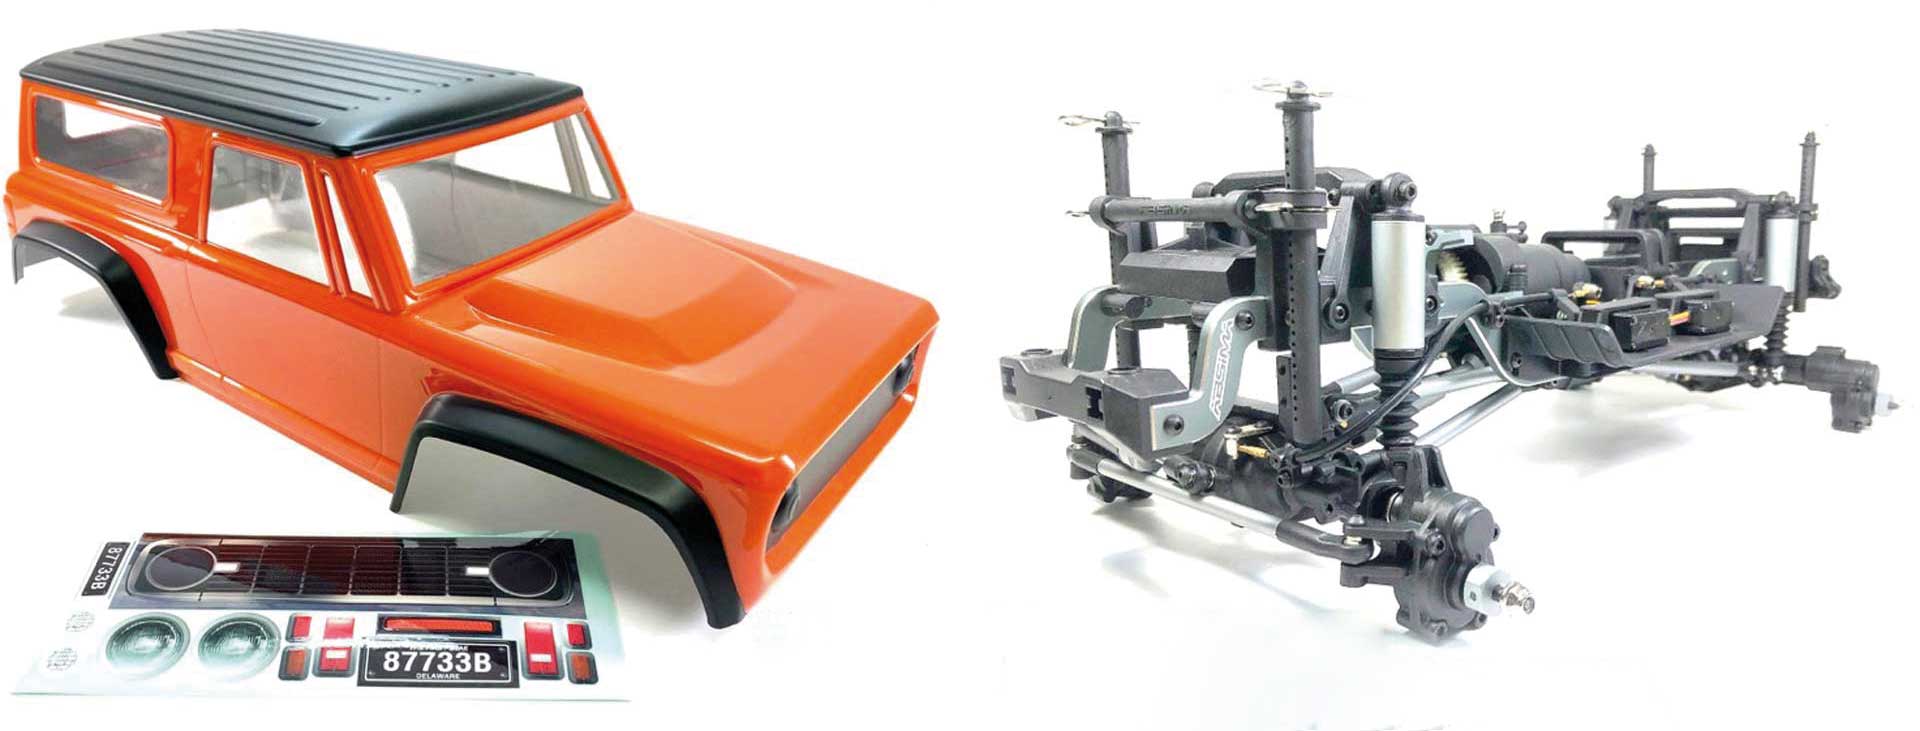 ABSIMA 1:10 EP Crawler CR3.4 prémonté Châssis y compris Bronco Style Body Orange